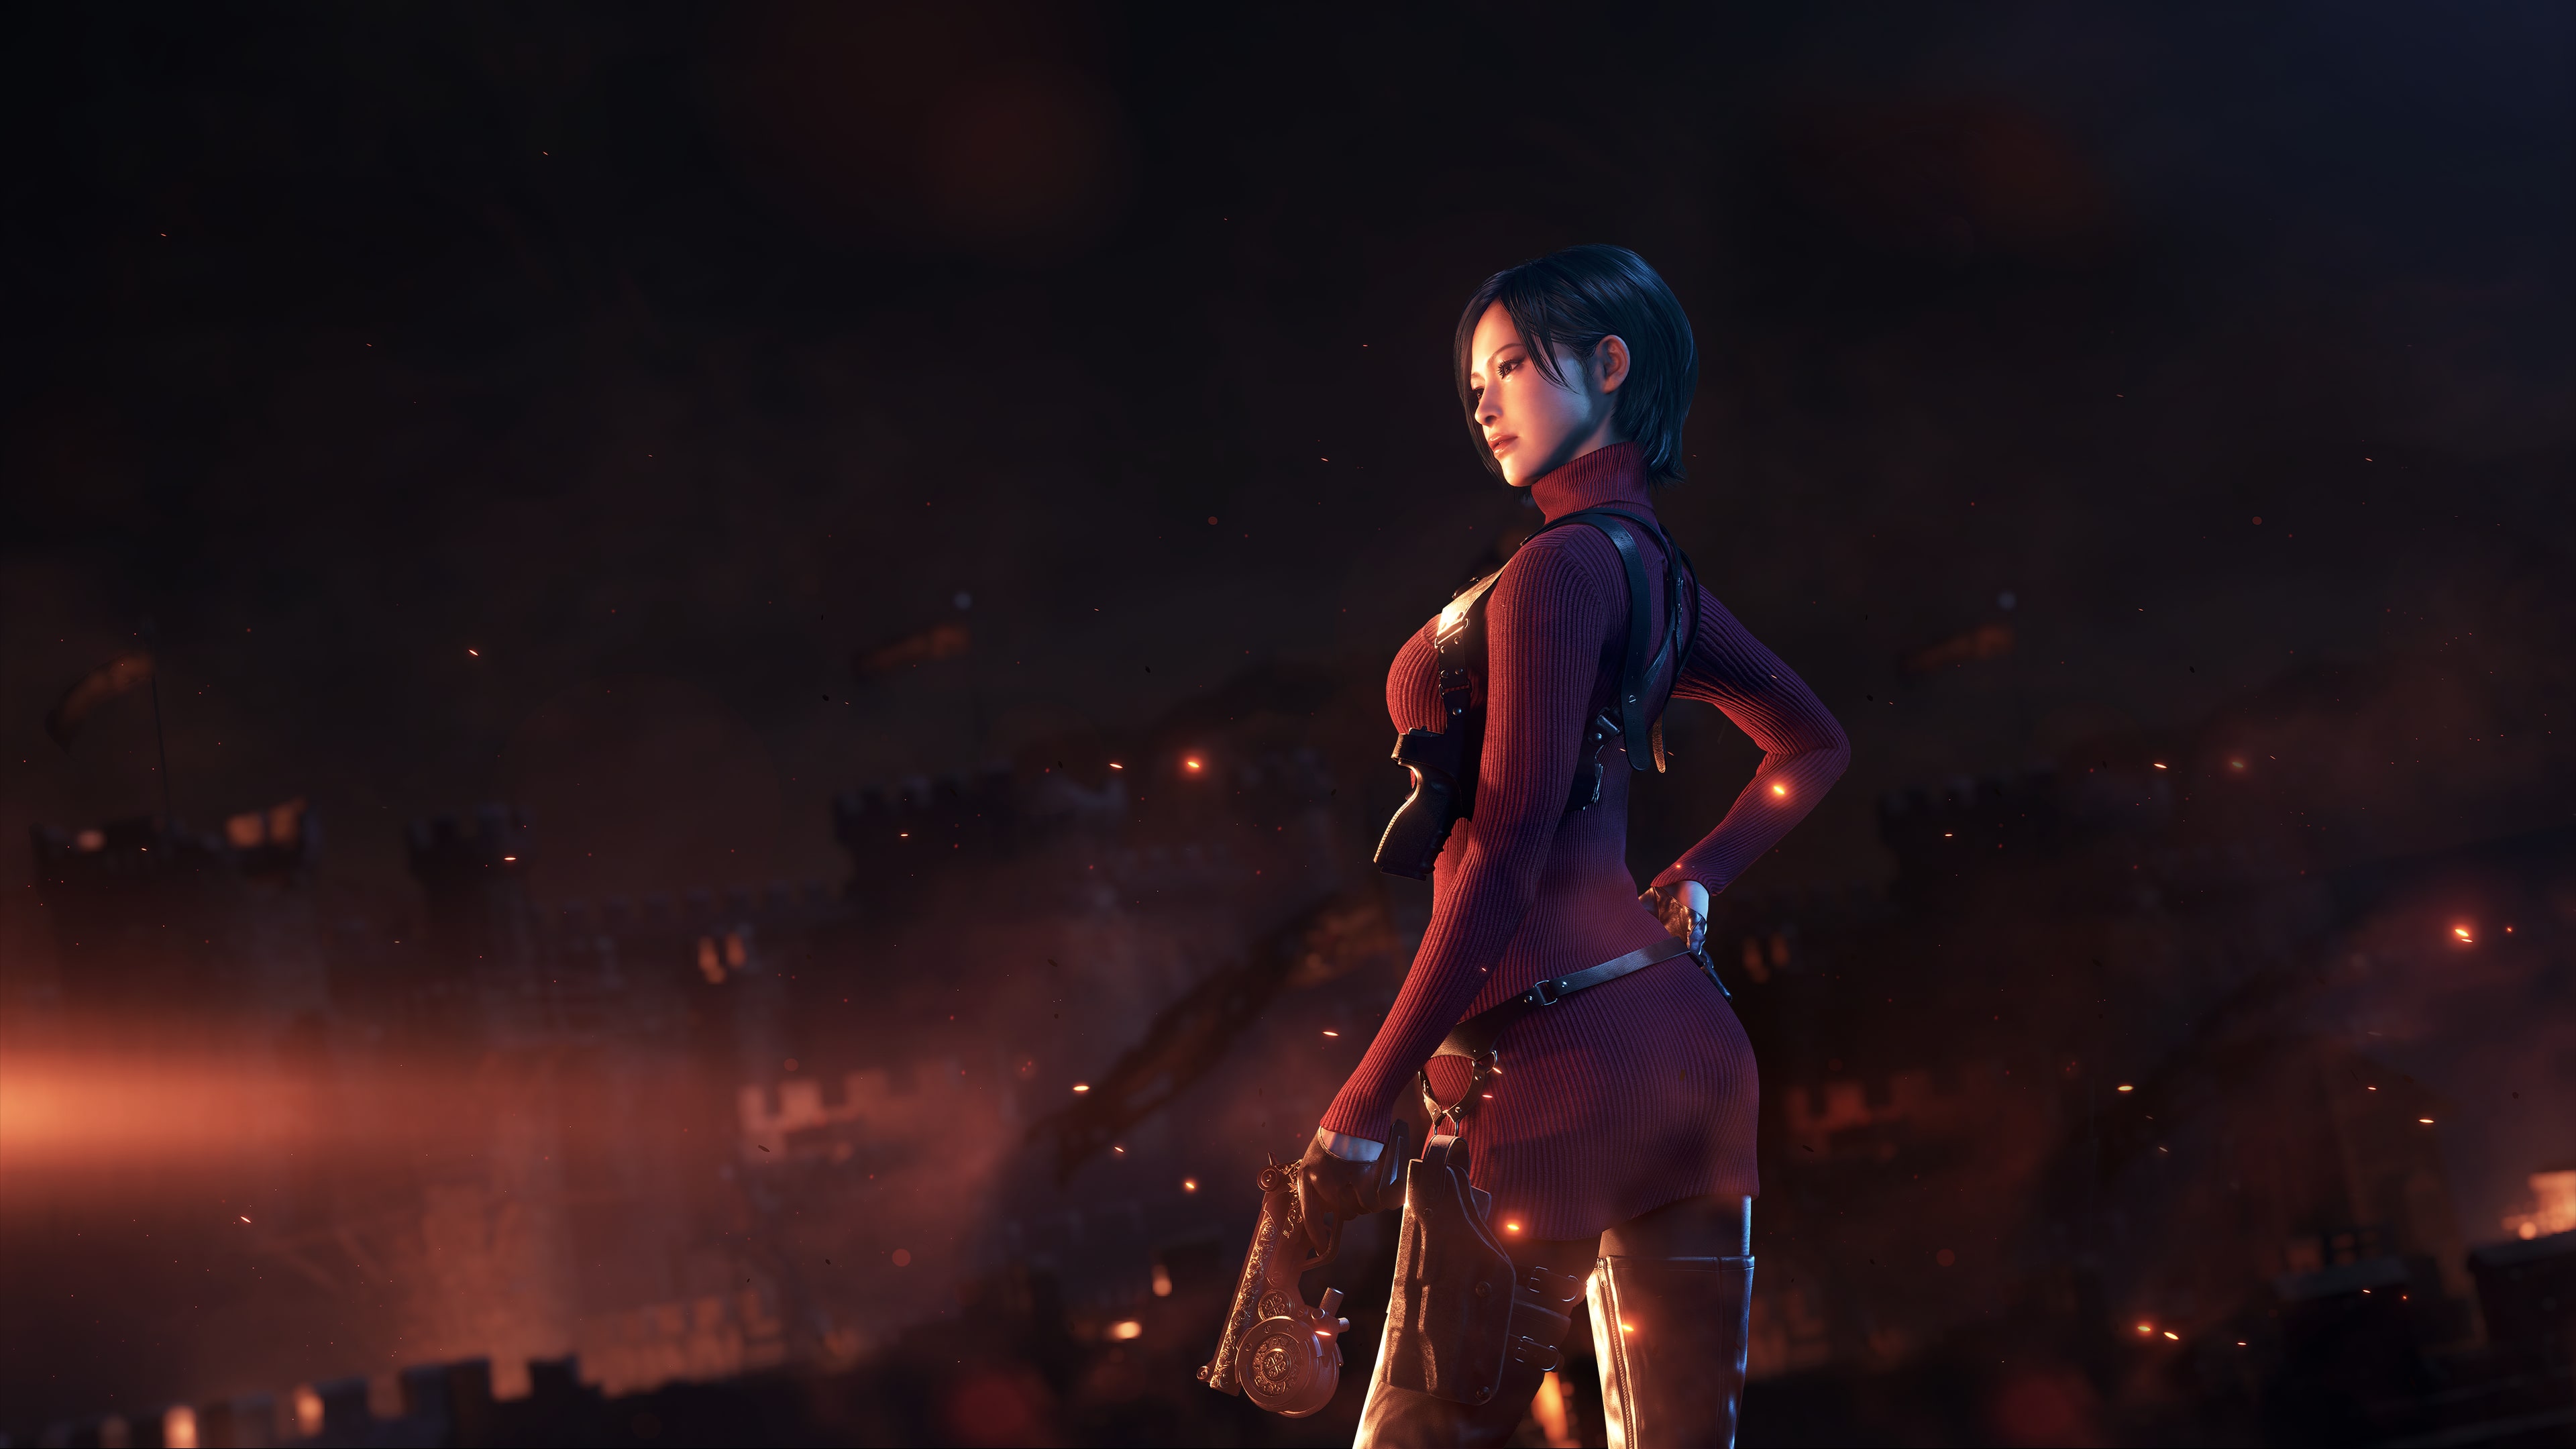 Resident Evil 4 - Separate Ways (English/Chinese/Korean/Japanese Ver.)